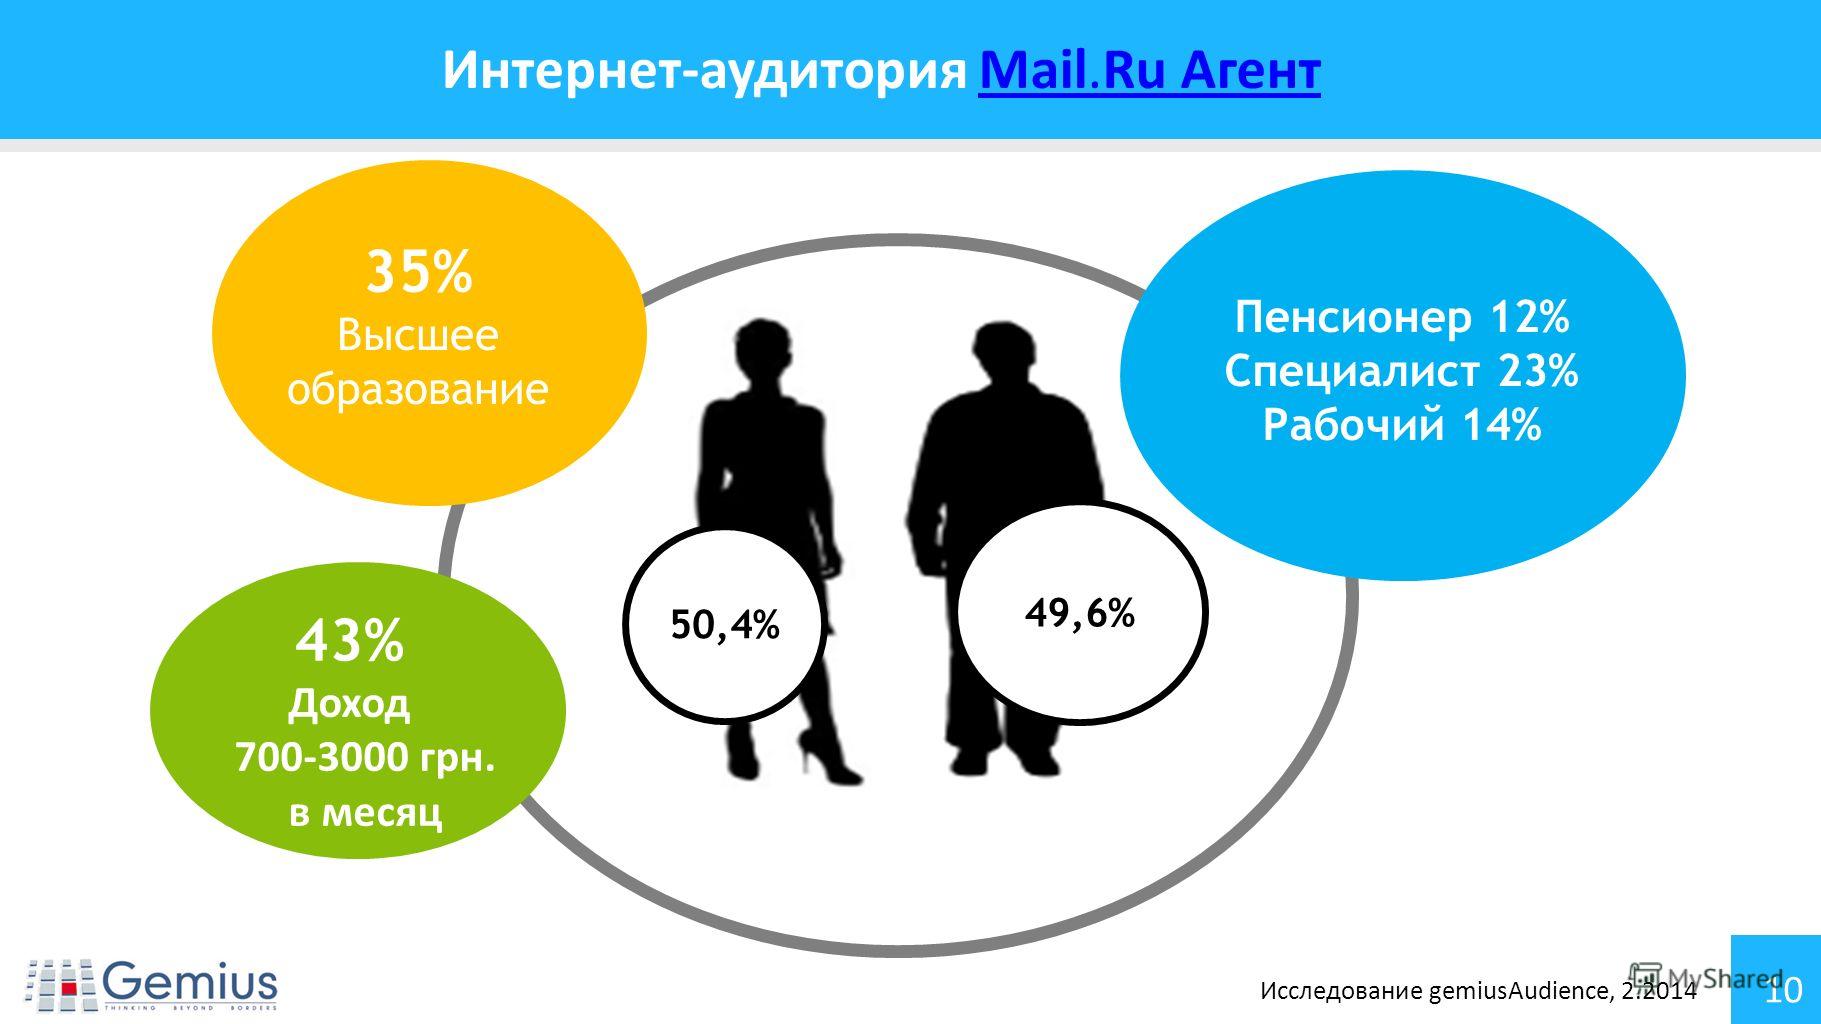 10 Интернет-аудитория Mail.Ru Агент Mail.Ru Агент 35% Высшее образование 43% Доход 700-3000 грн. в месяц 50,4% 49,6% Пенсионер 12% Специалист 23% Рабочий 14% Исследование gemiusAudience, 2.2014